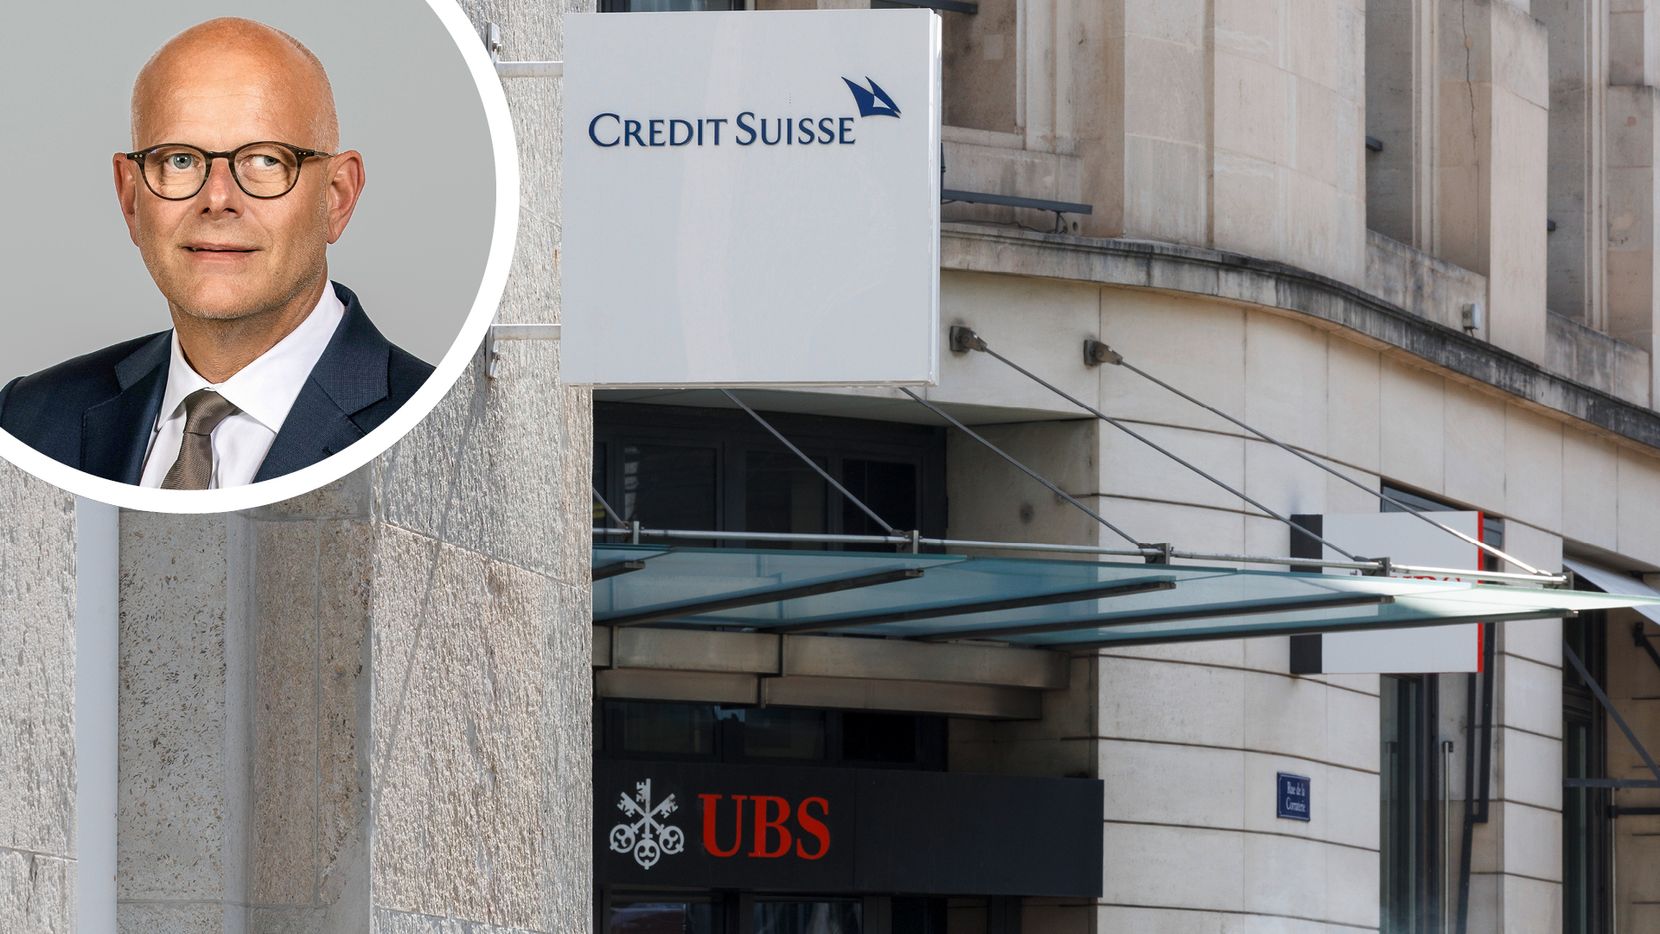 Portrait von Zaugg der Bank Avera oben links. Hauptbild 2 Filialen der Banken Credit Suisse und UBS nebeneinander.